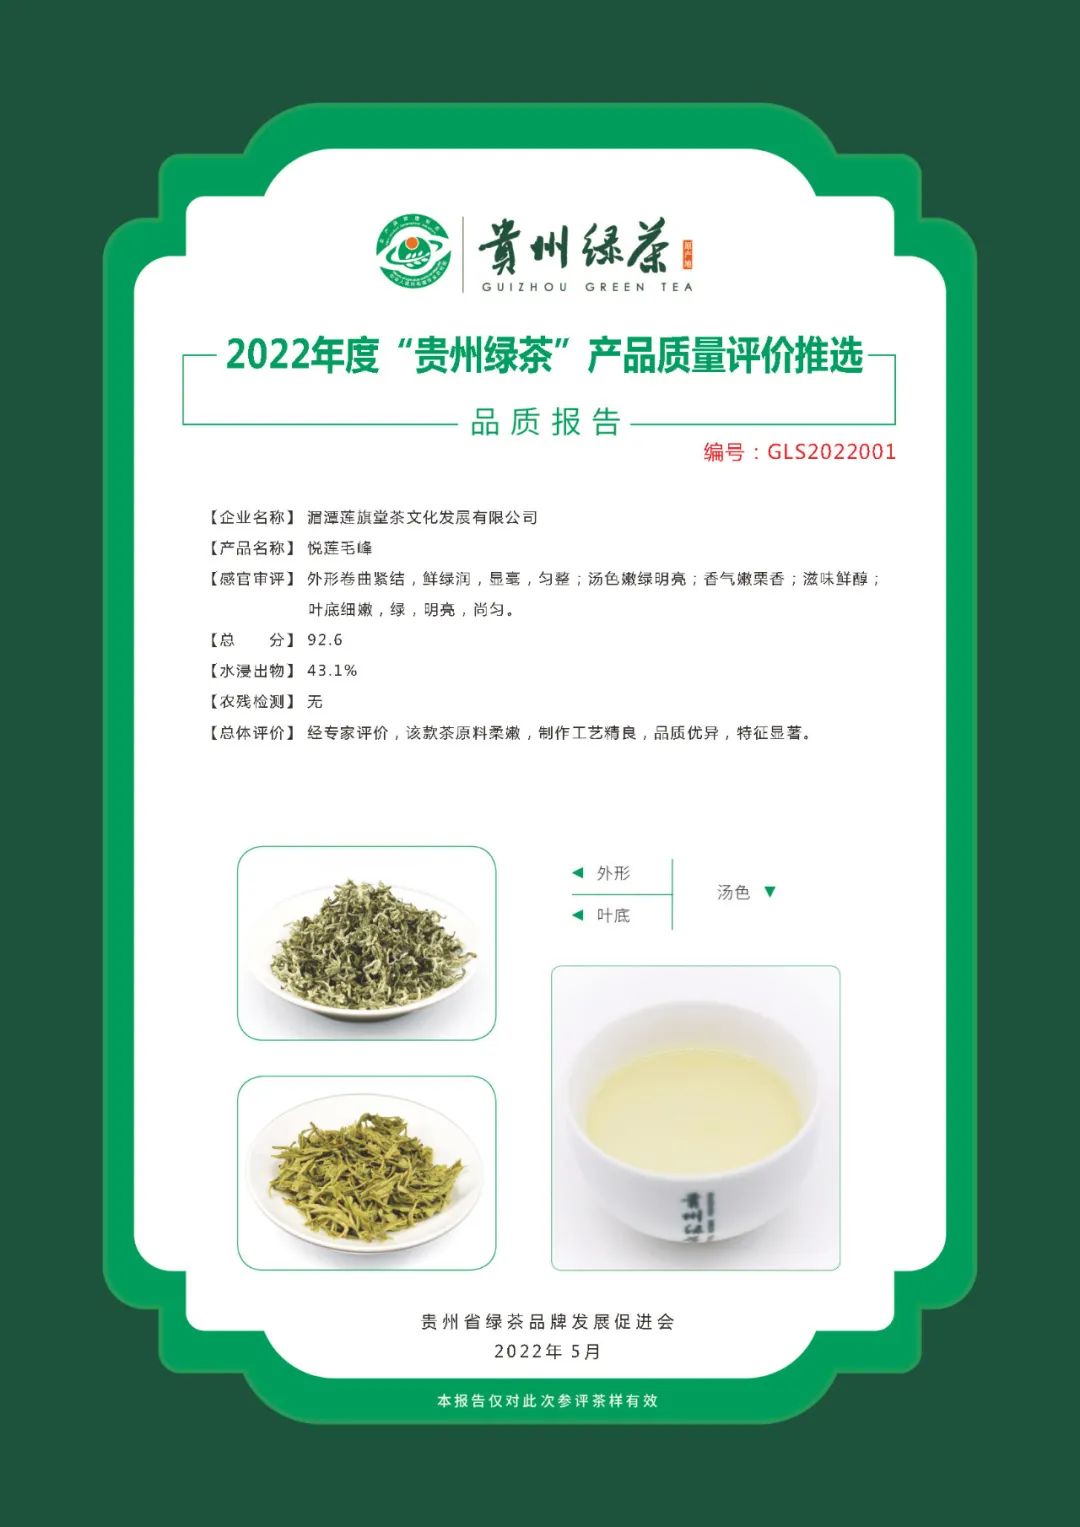 2022年“贵州绿茶”品质报告丨湄潭莲旗堂茶文化发展有限公司